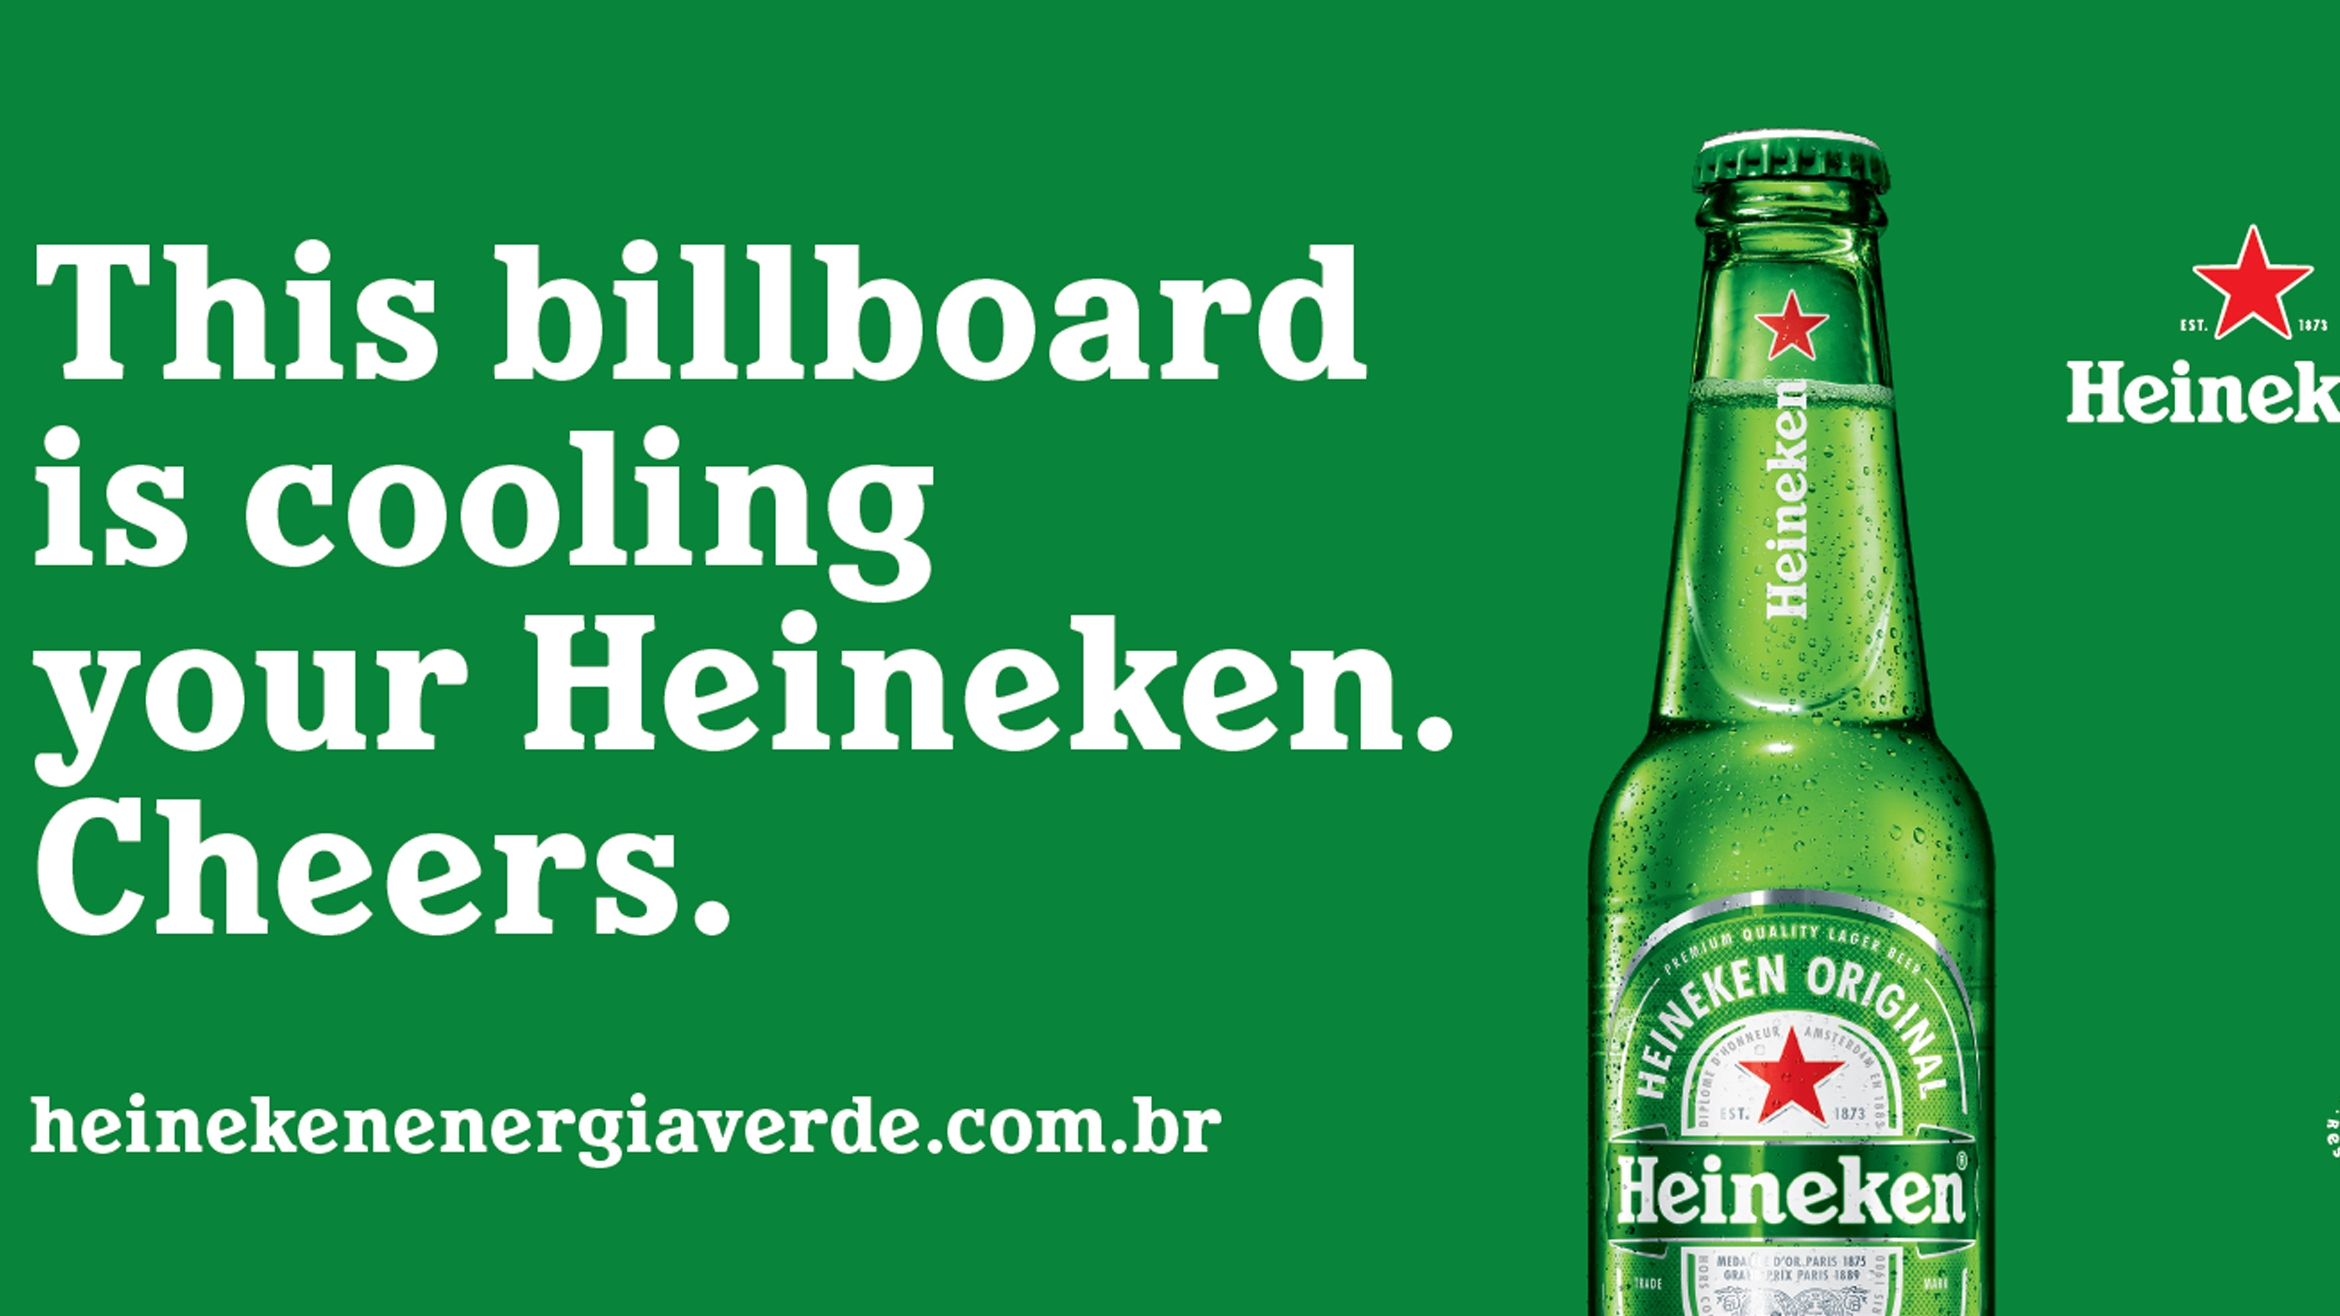 Heineken installiert ein Solar-Plakat in Rio –